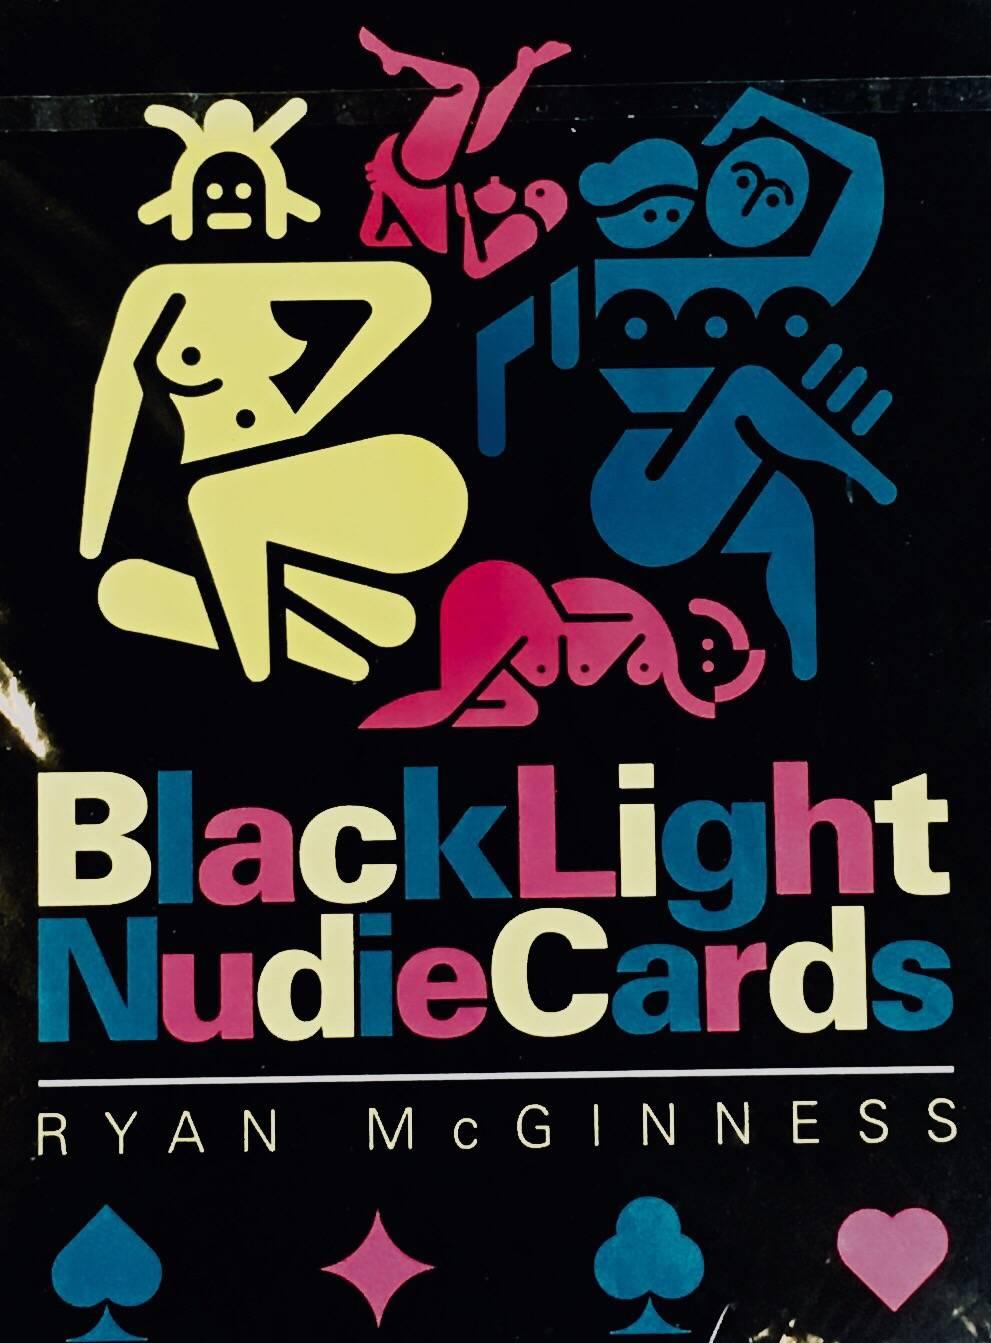 Contemporary Ryan McGinness Blacklight Nudie Cards